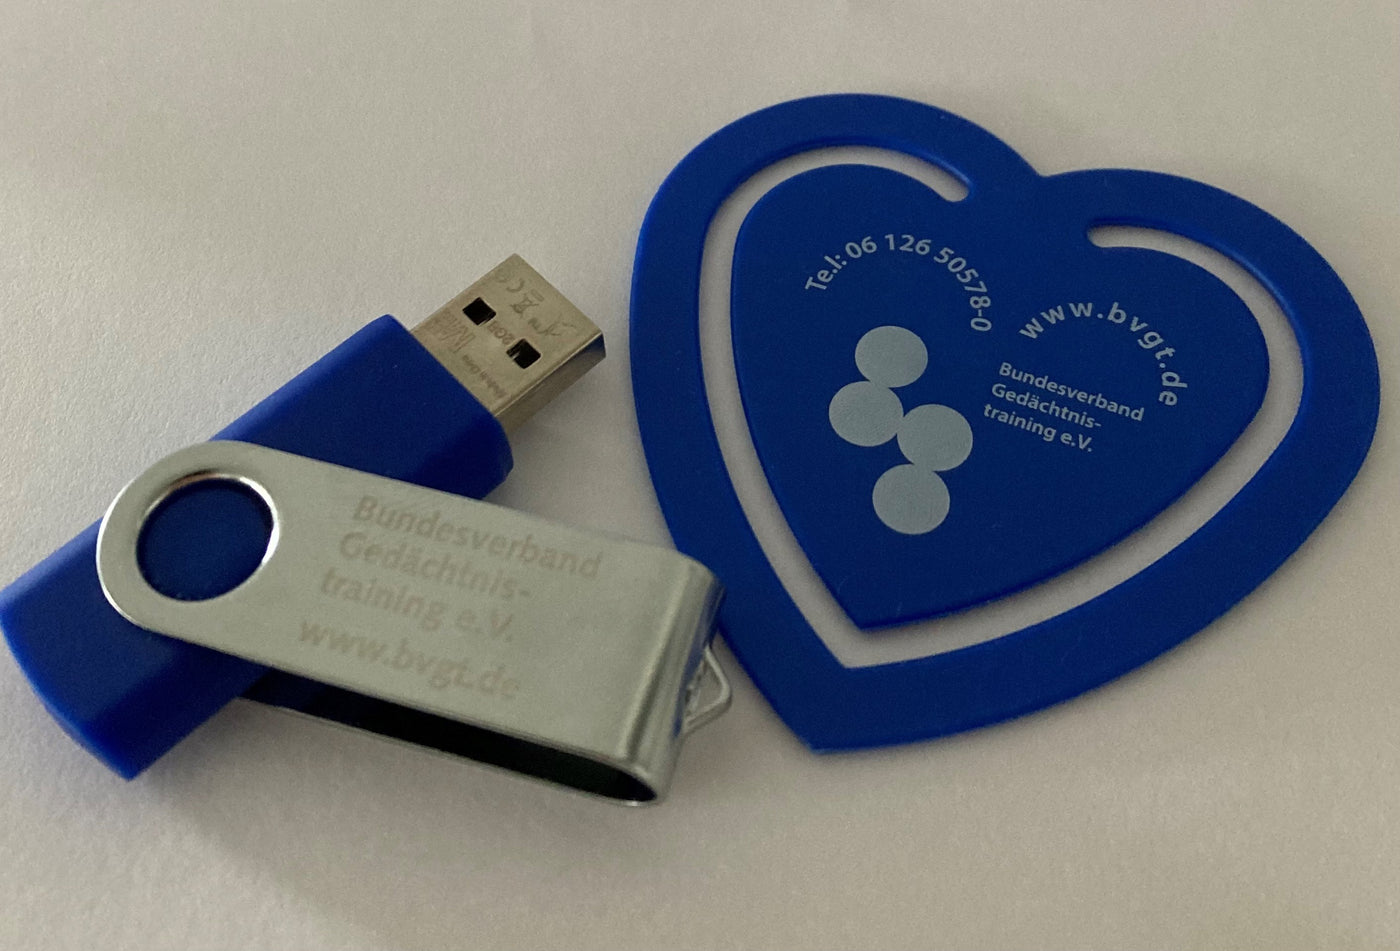 USB-Stick mit BVGT e.V. Gravur (2GB)